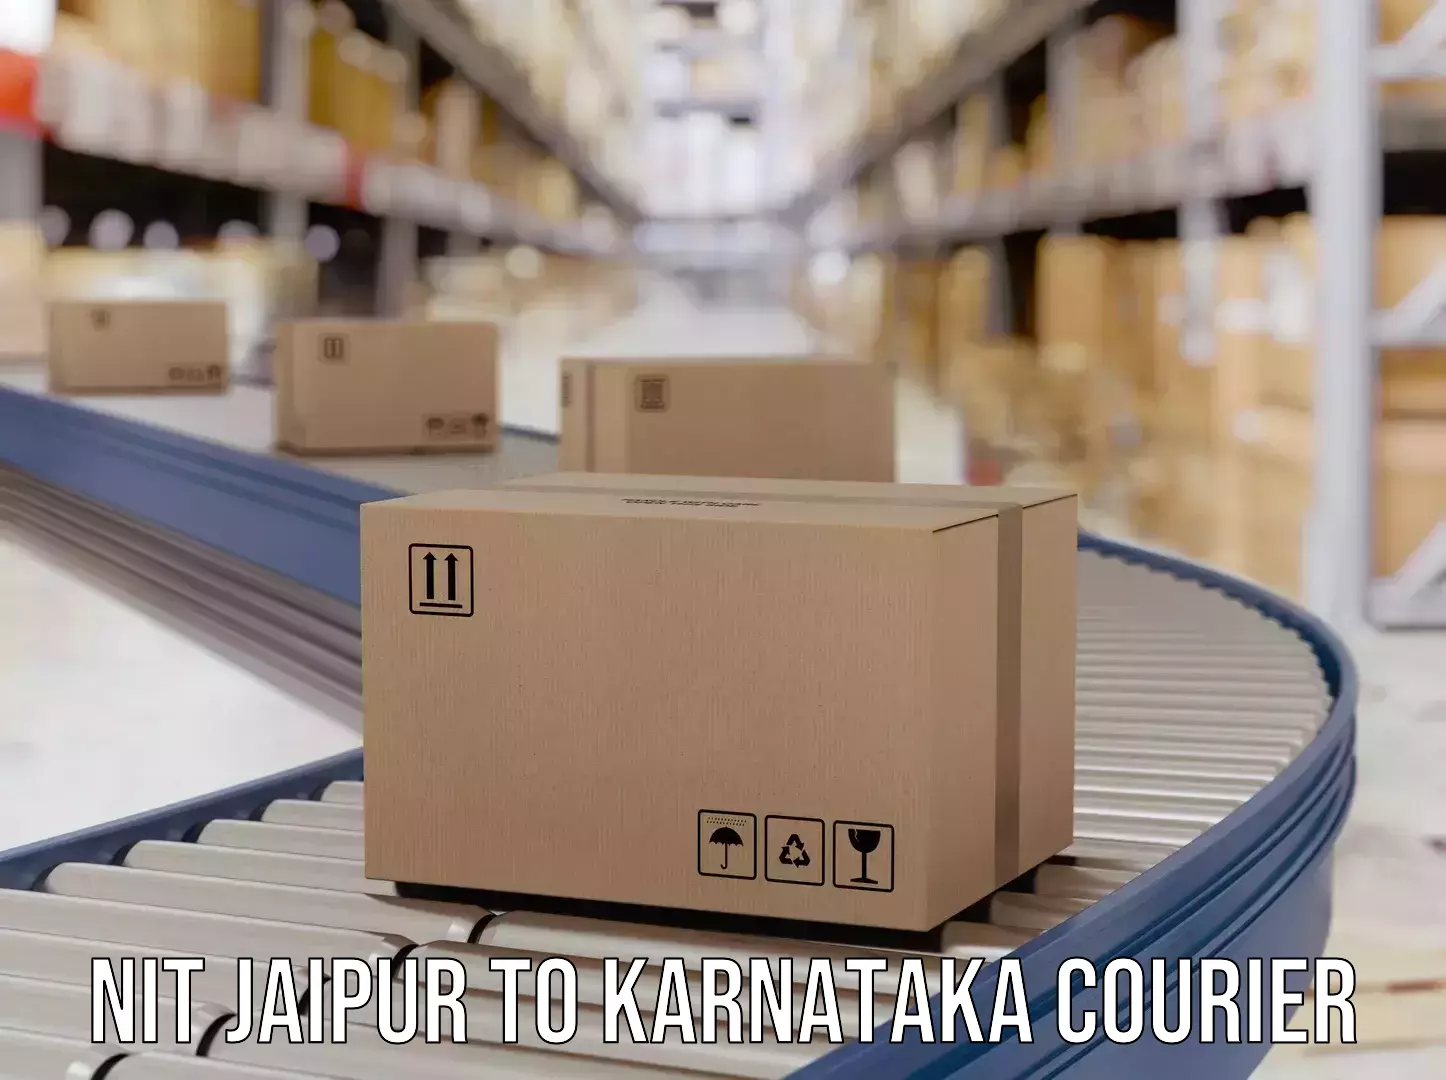 Premium courier services NIT Jaipur to Mangalore Port